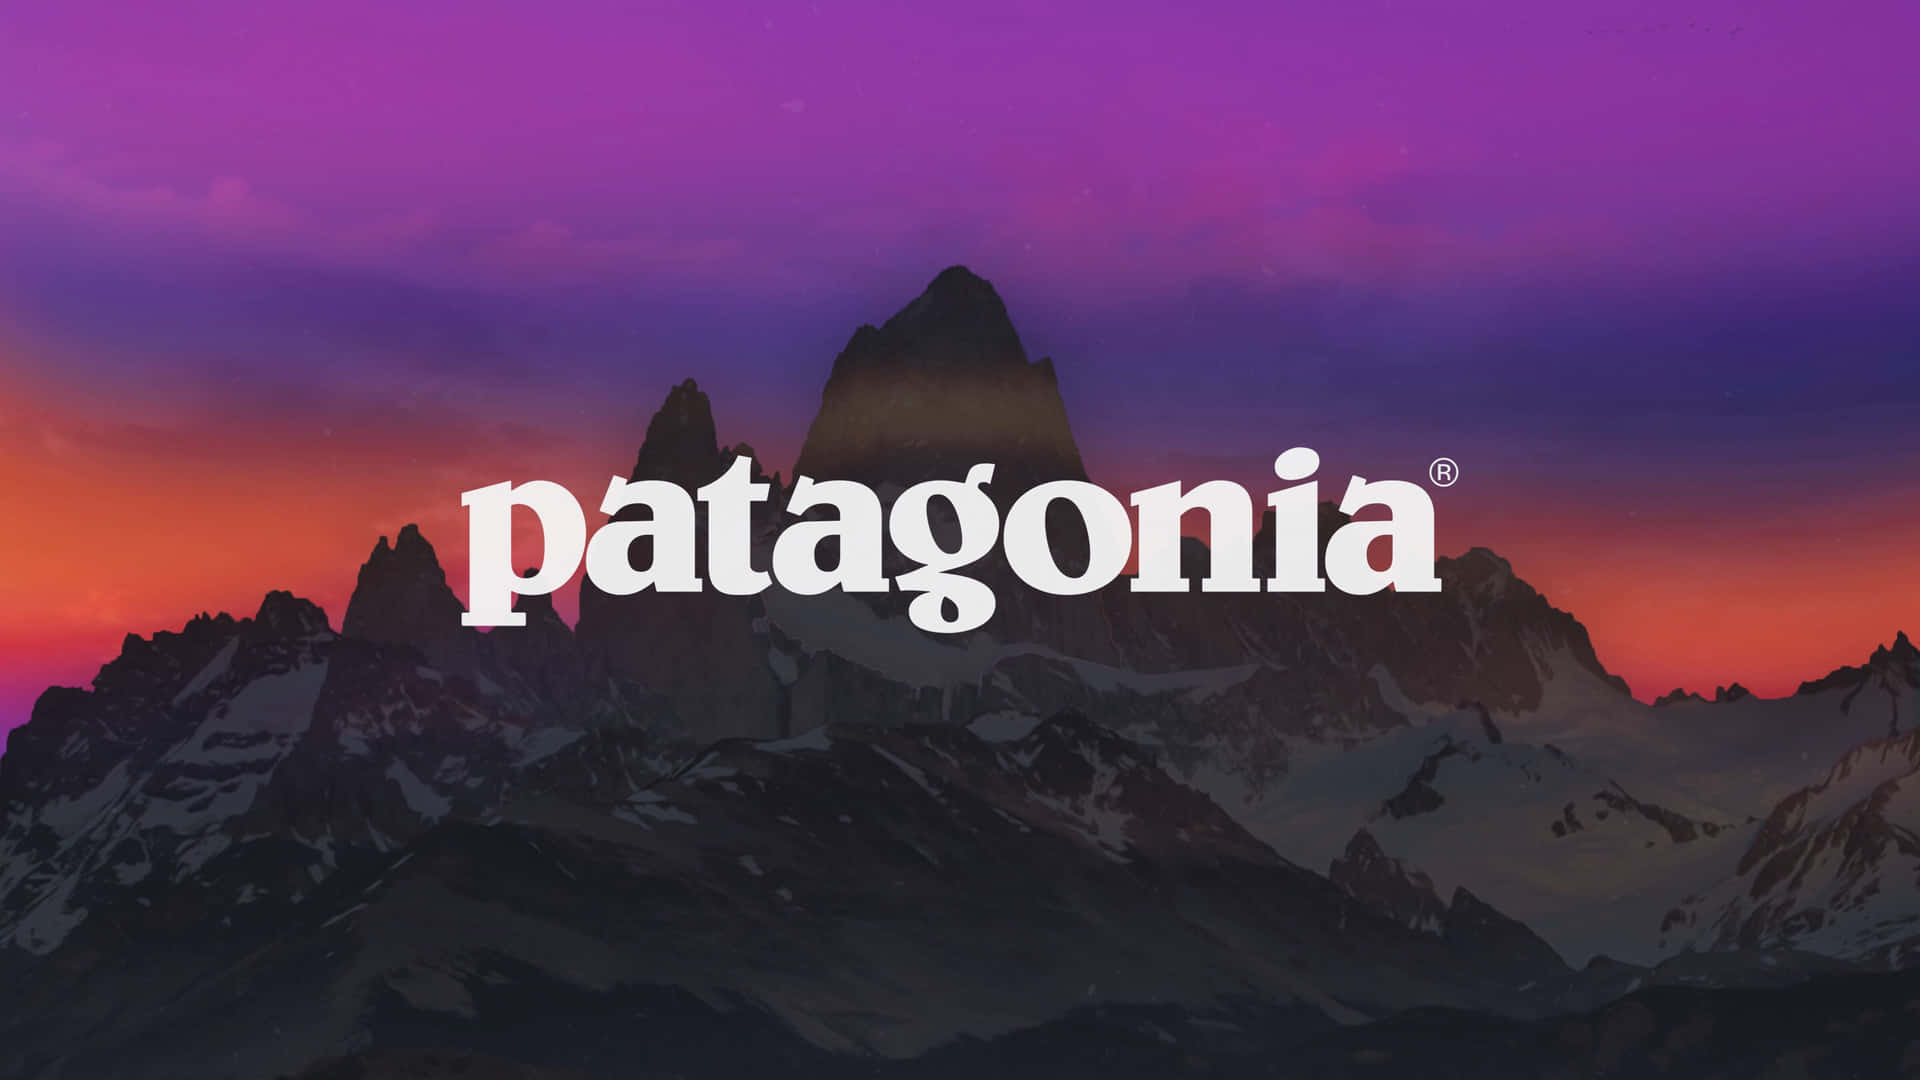 Eye-catching Views of Patagonia